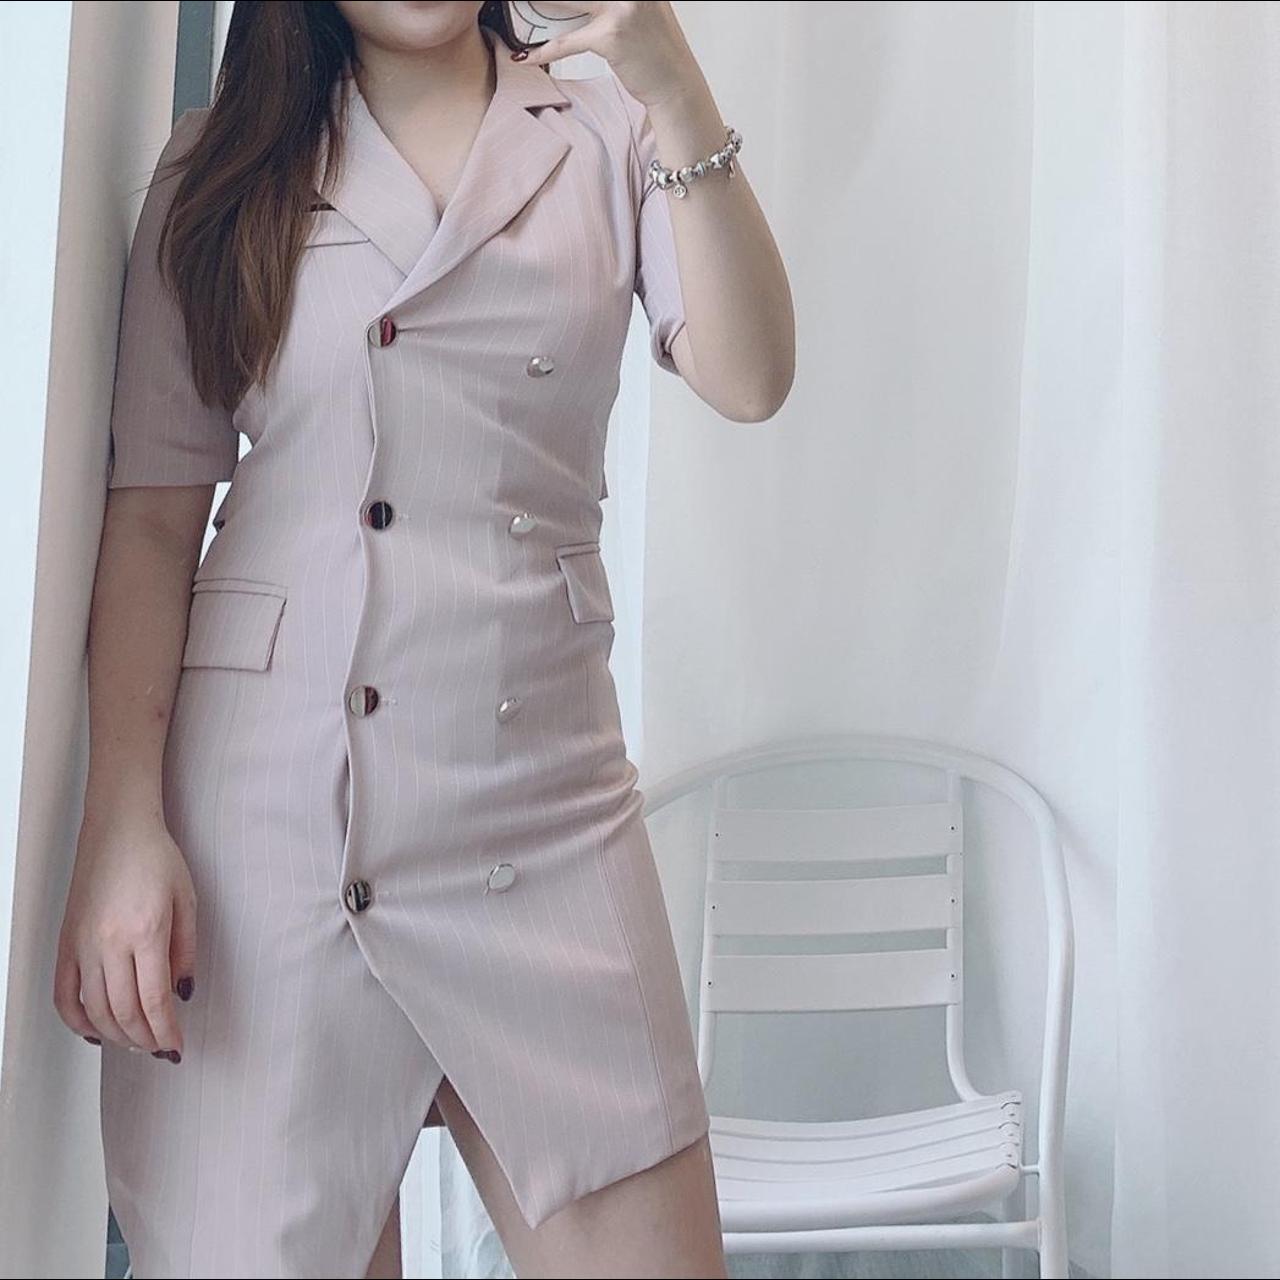 Light Pink office lady suit mini dress Size S/M Best... - Depop